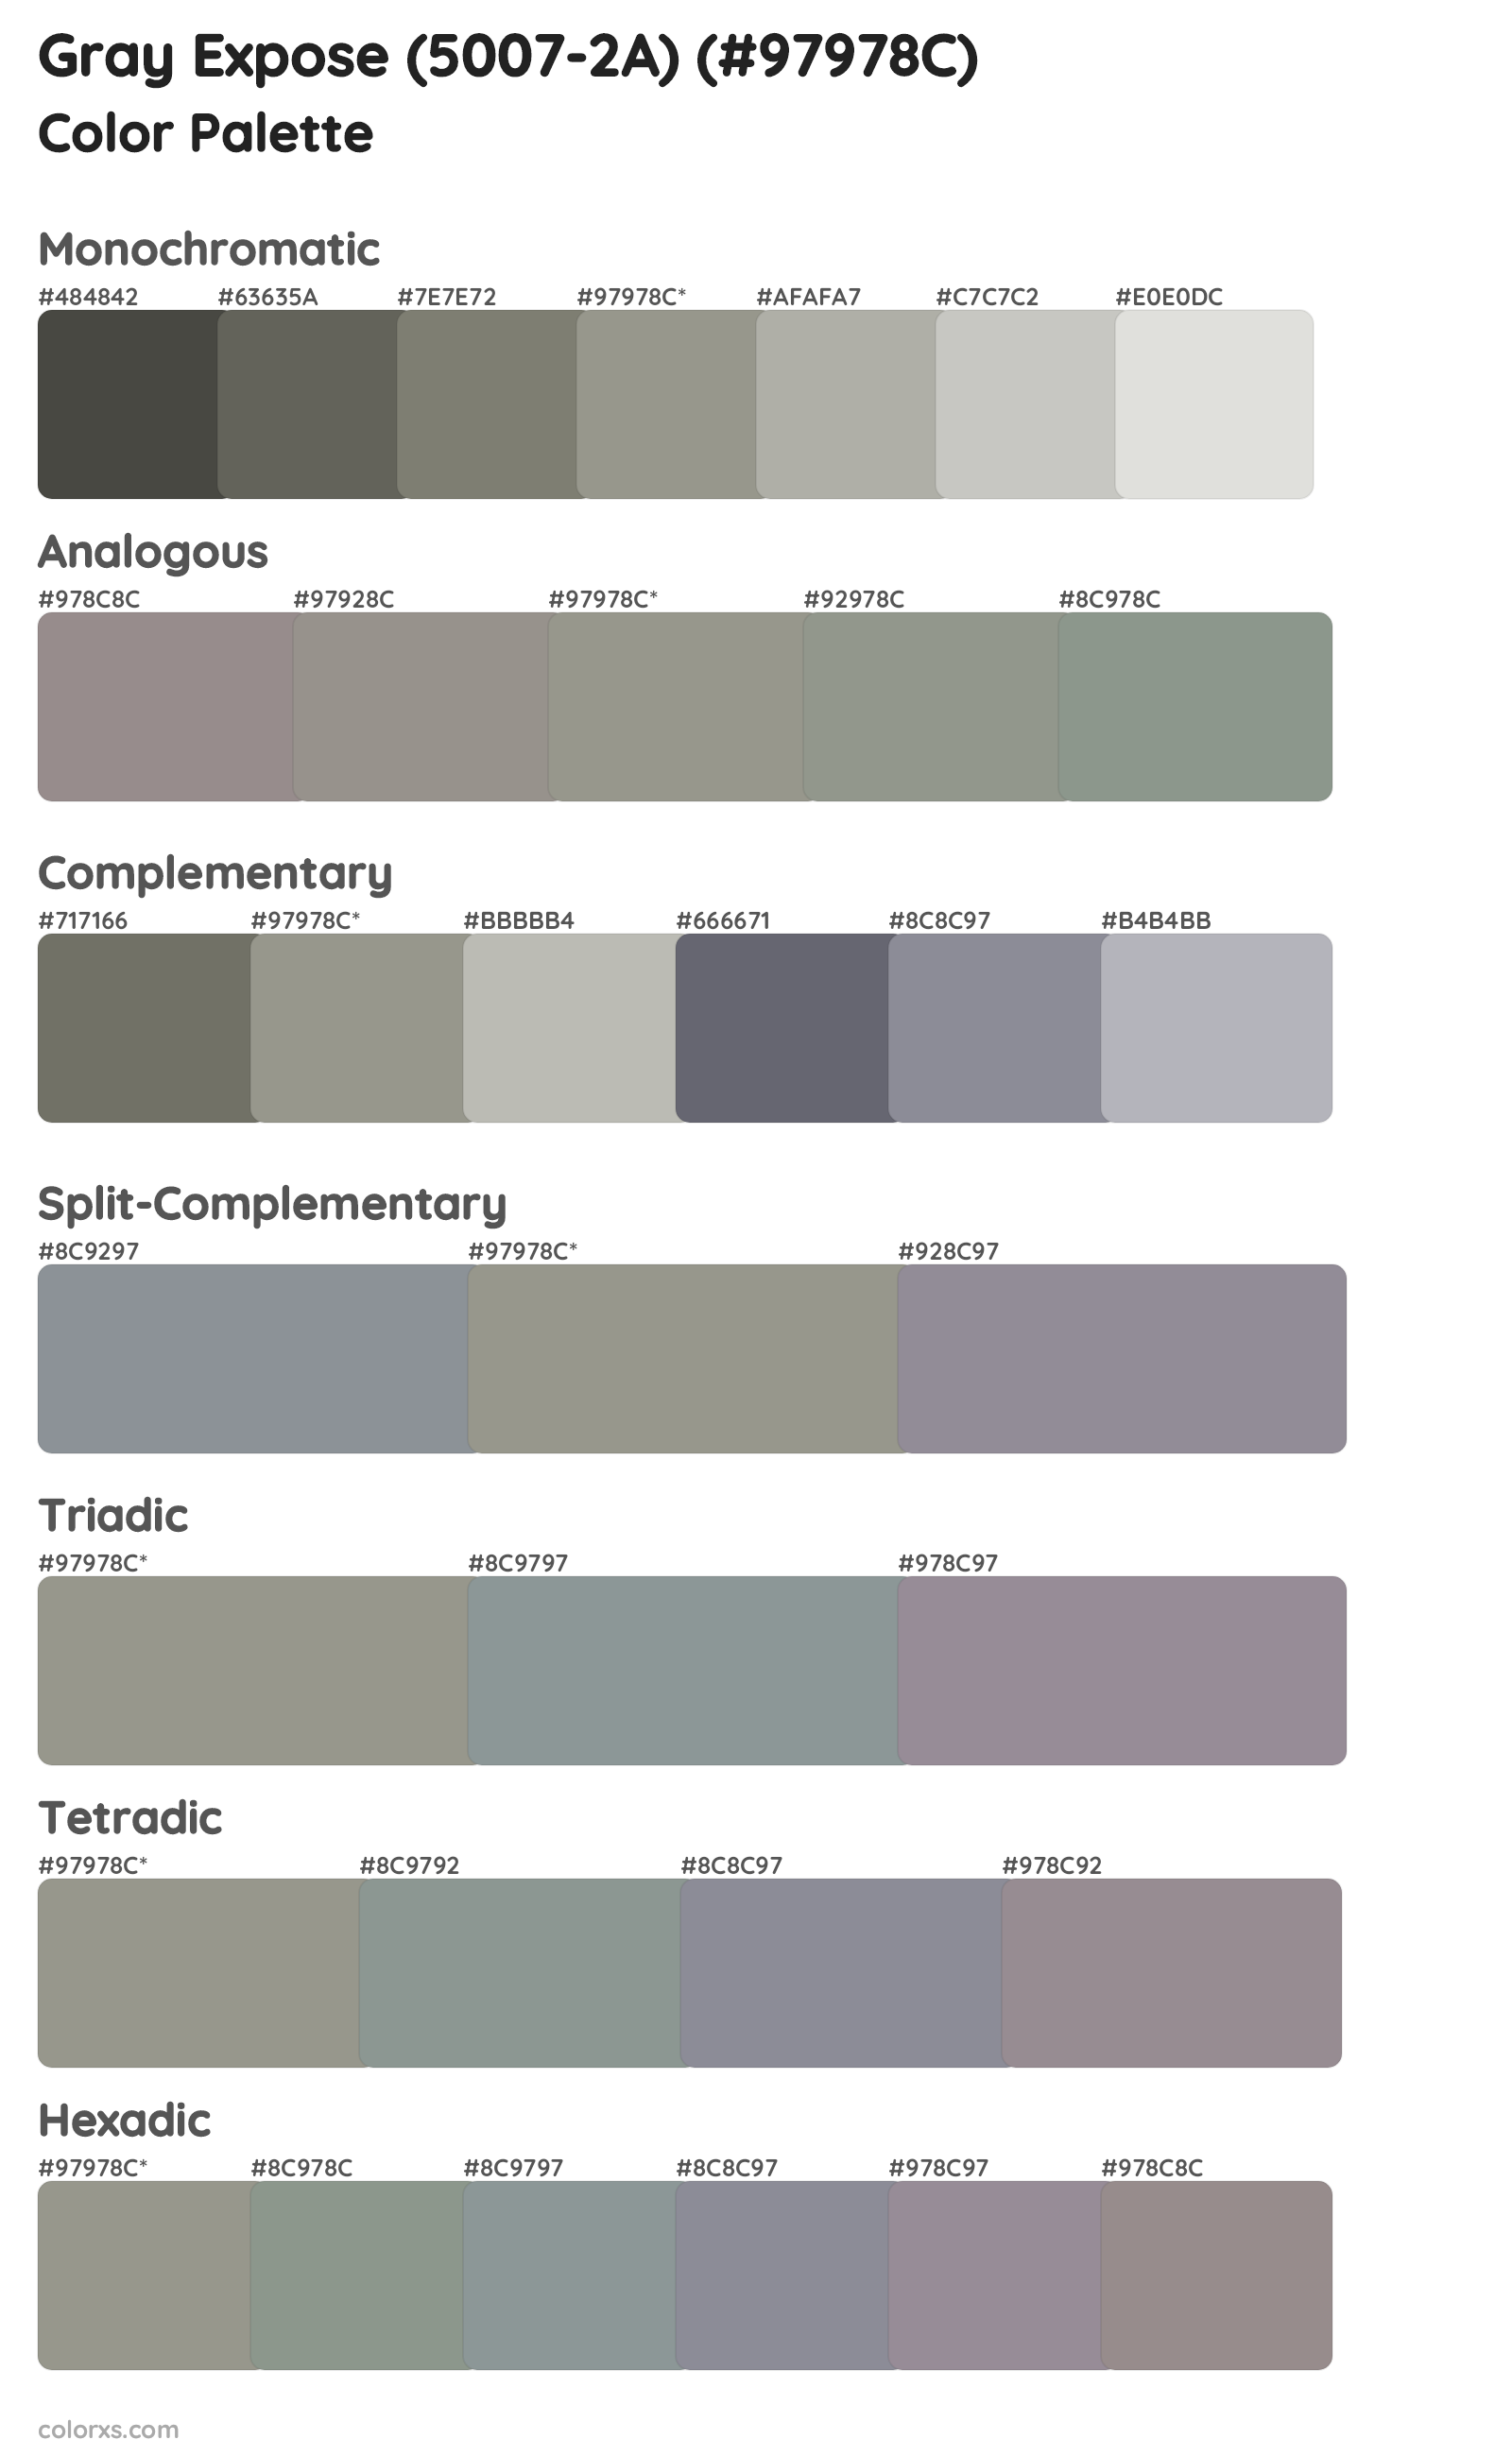 Gray Expose (5007-2A) Color Scheme Palettes